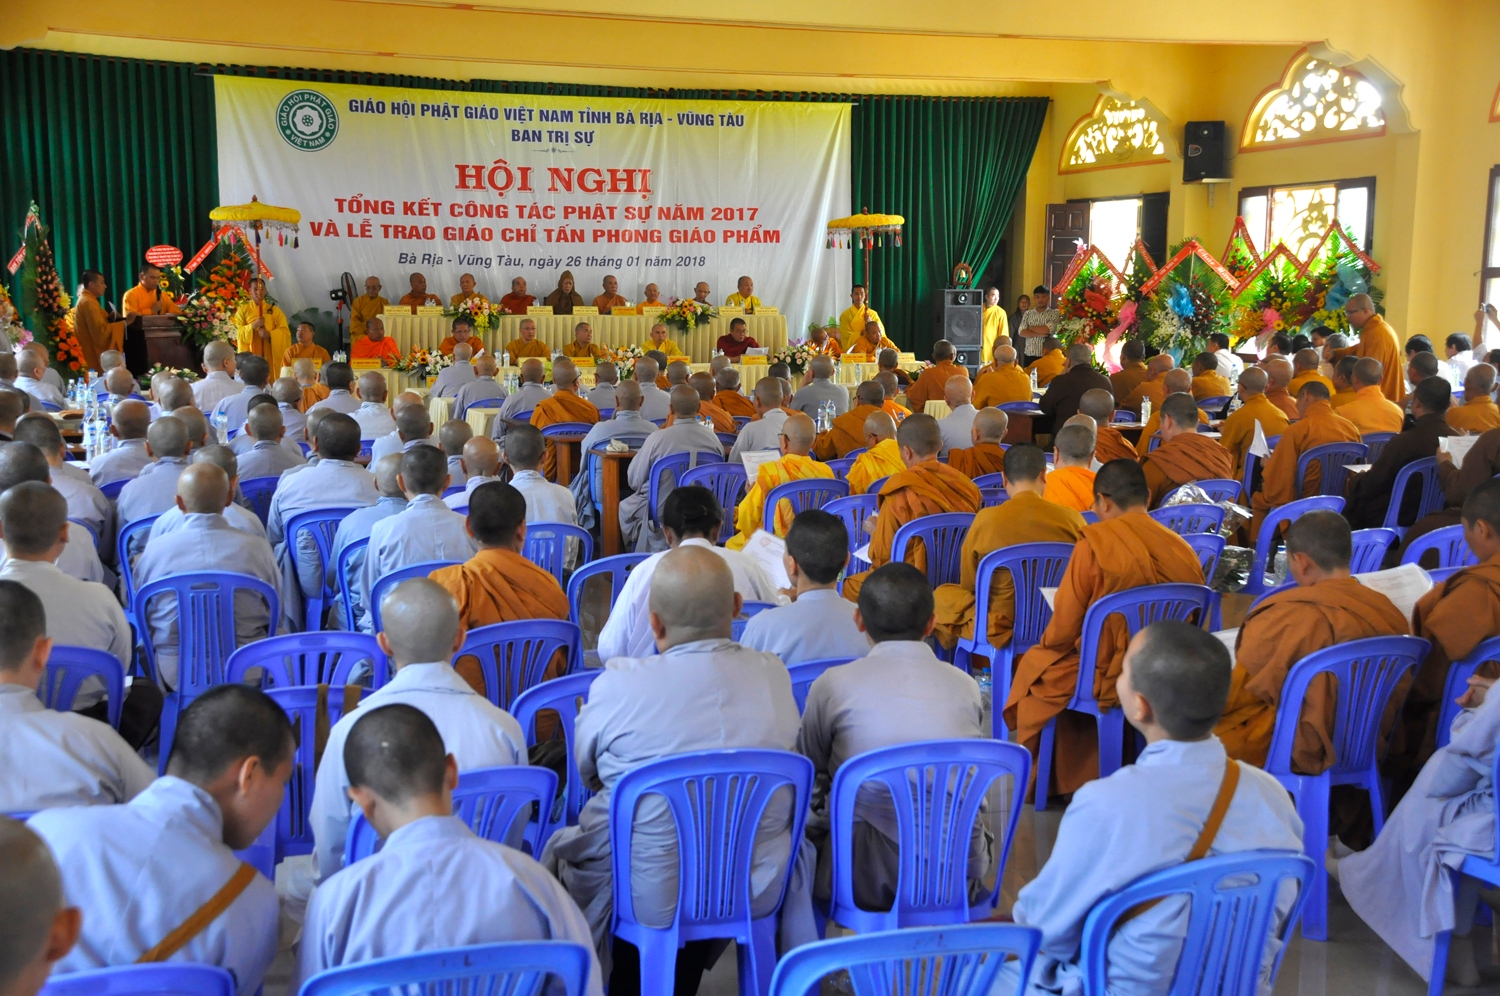 Phật giáo BR-VT: Hội nghị tổng kết công tác Phật sự 2017 và trao Giáo chỉ tấn phong giáo phẩm